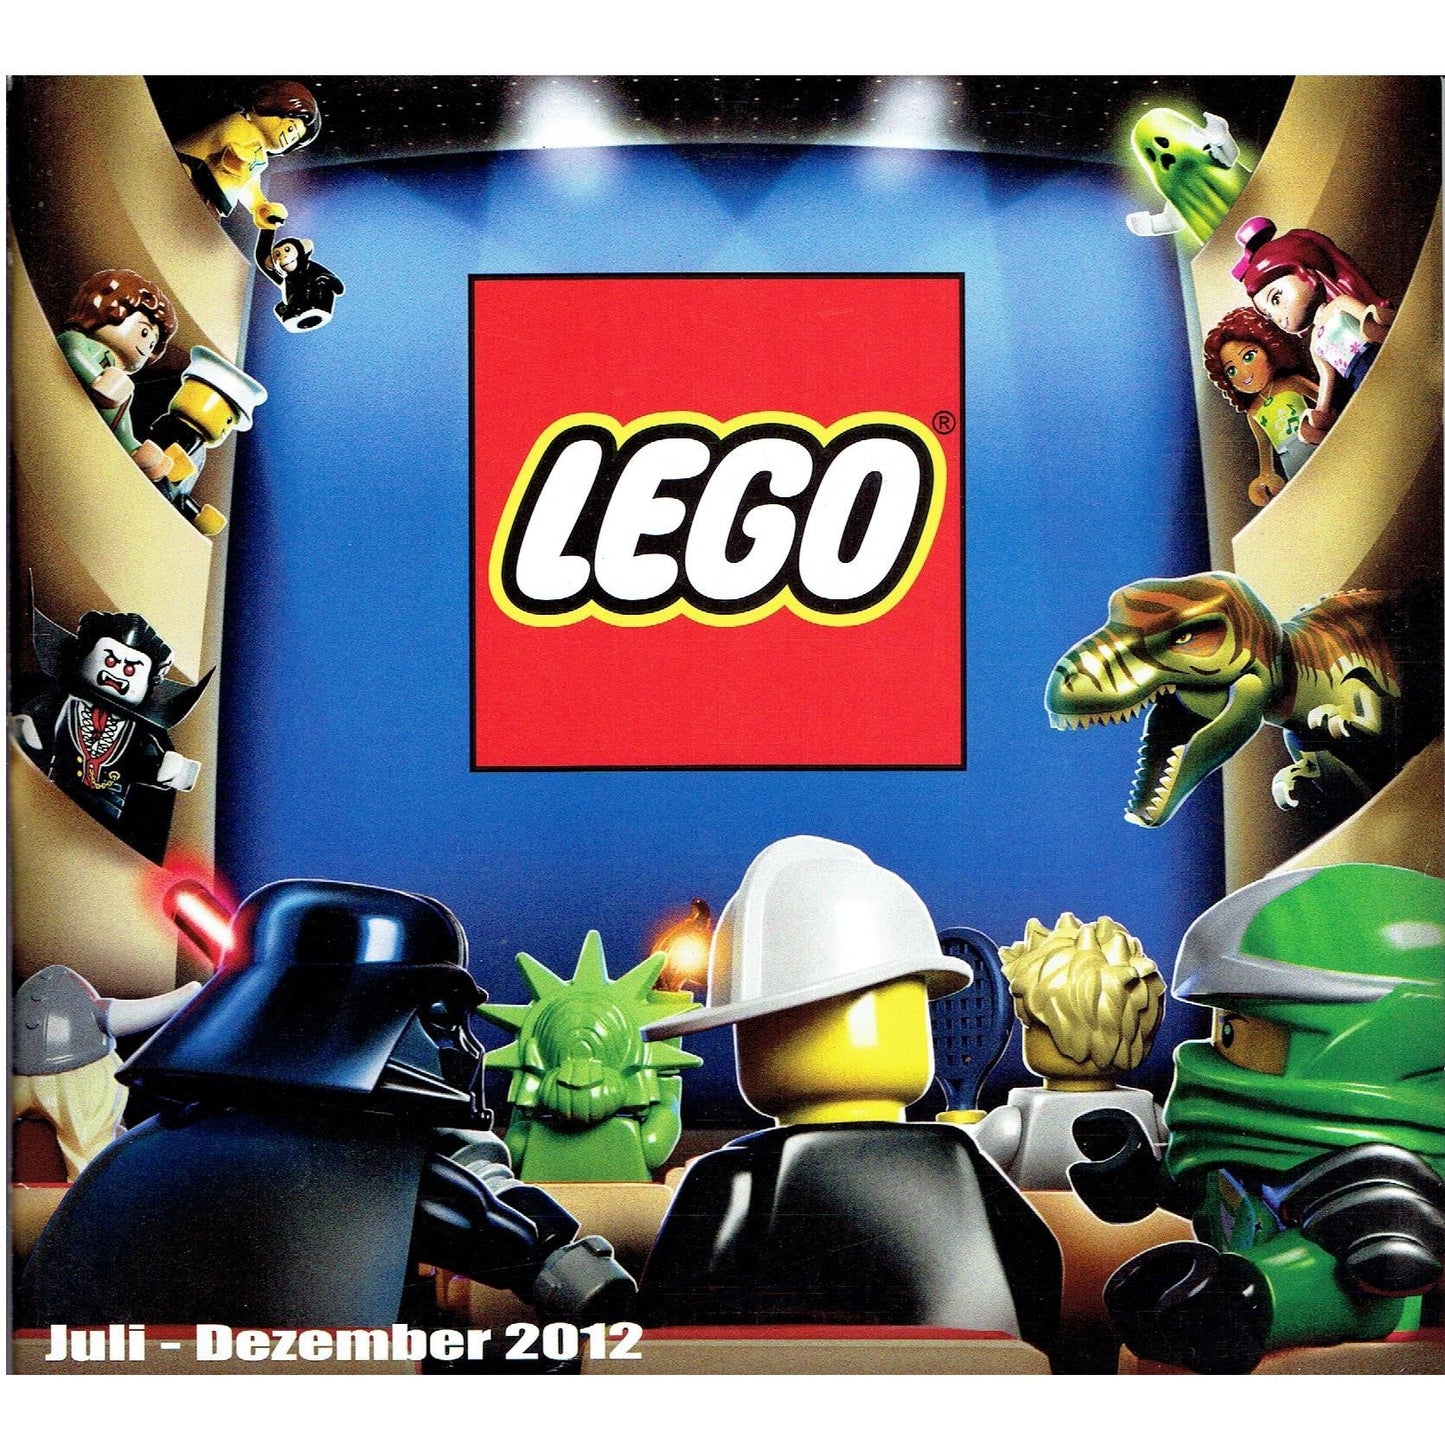 LEGO Katalog Juli - Dezember 2012